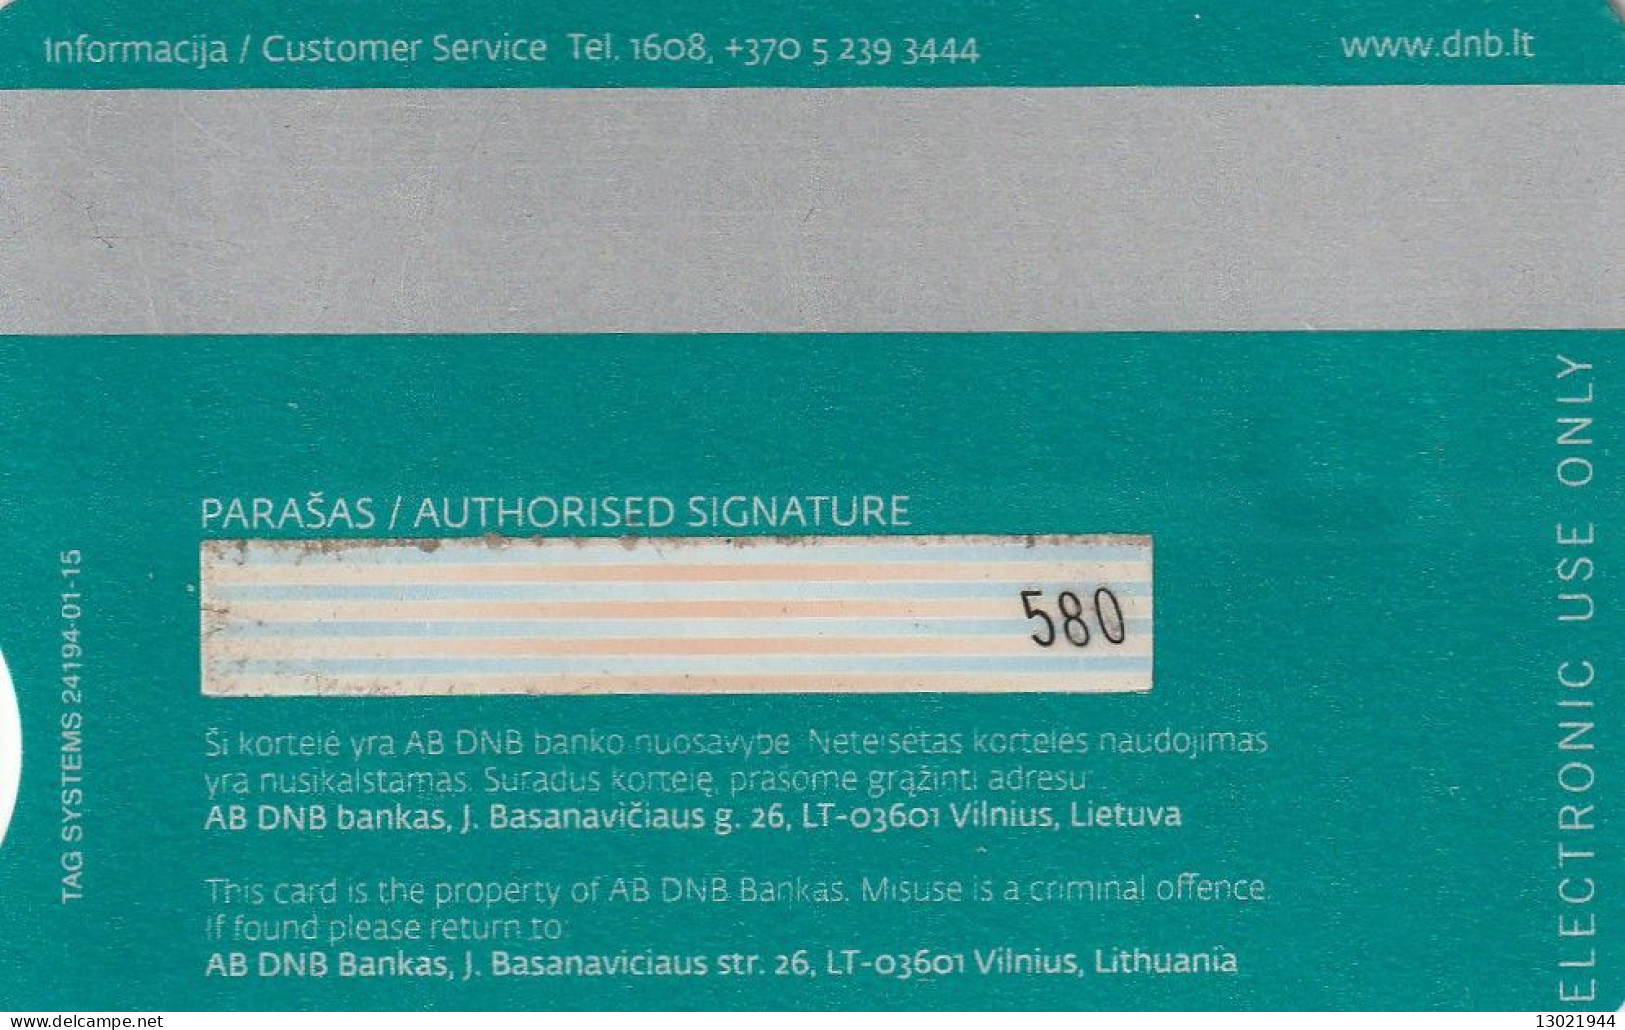 N. 2 LITUANIA BANK  CARDS  - POSSIBLE SALE OF SINGLE CARDS - Tarjetas De Crédito (caducidad Min 10 Años)